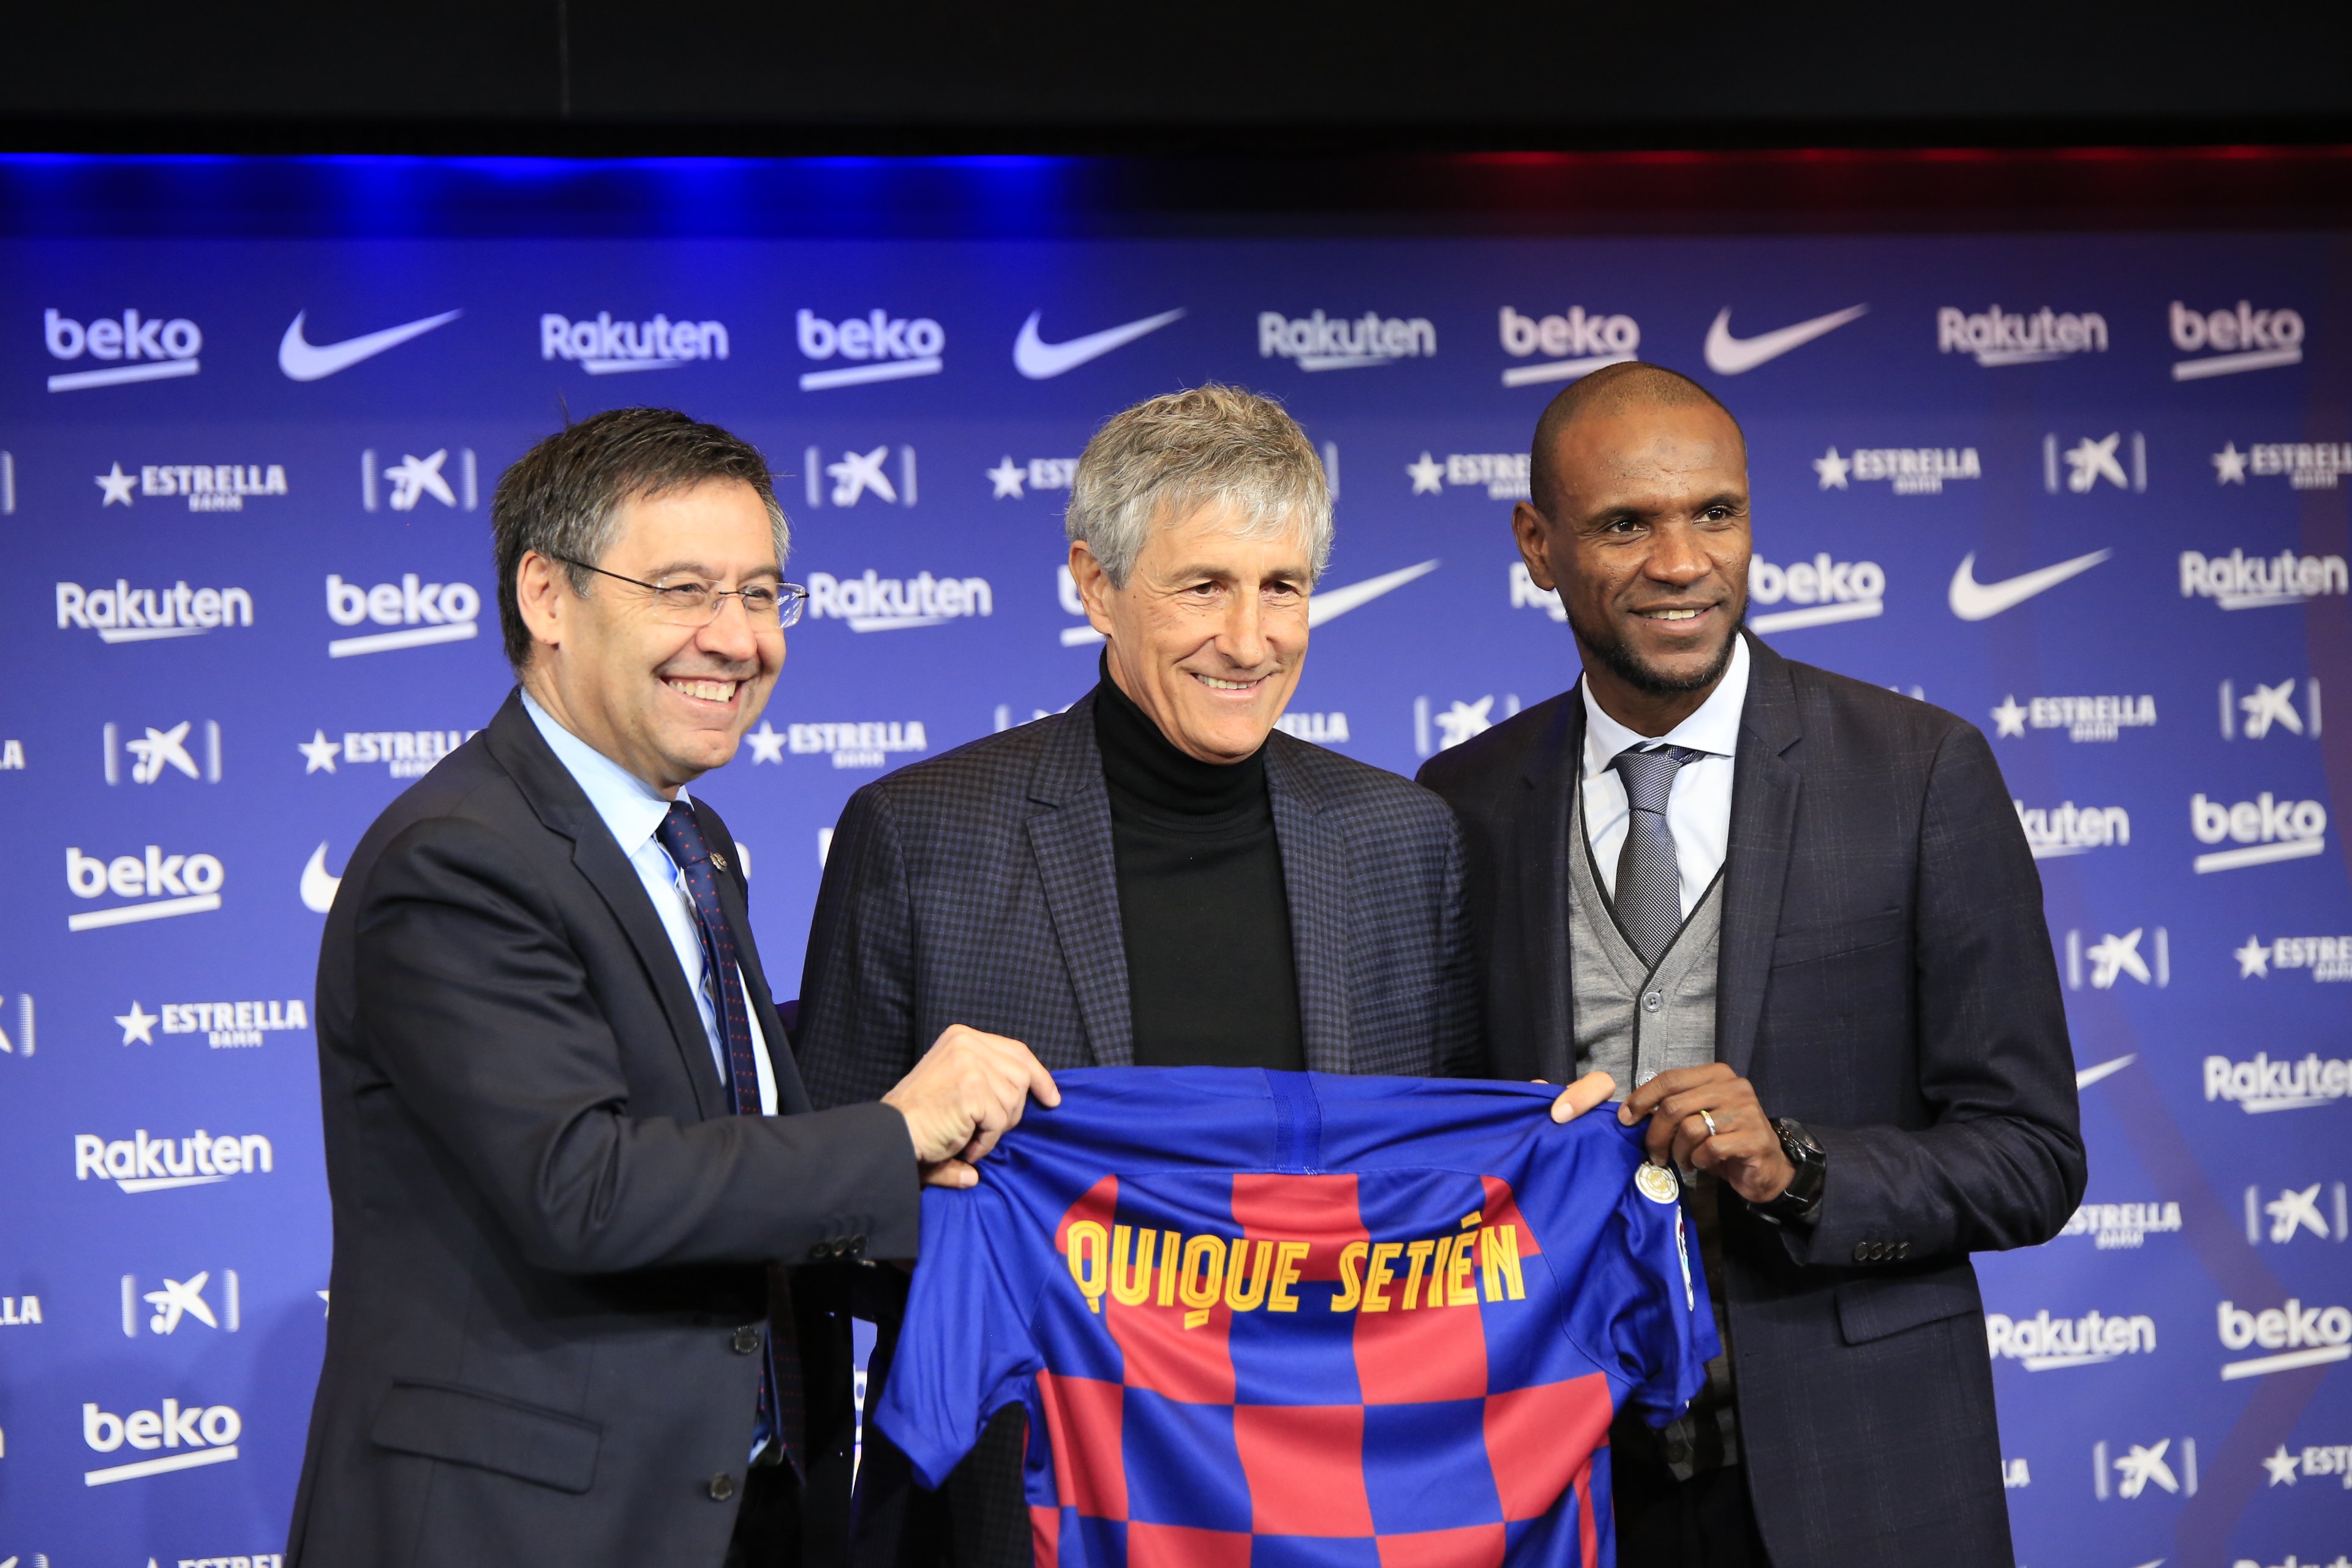 Quique Setién, Barça's new coach